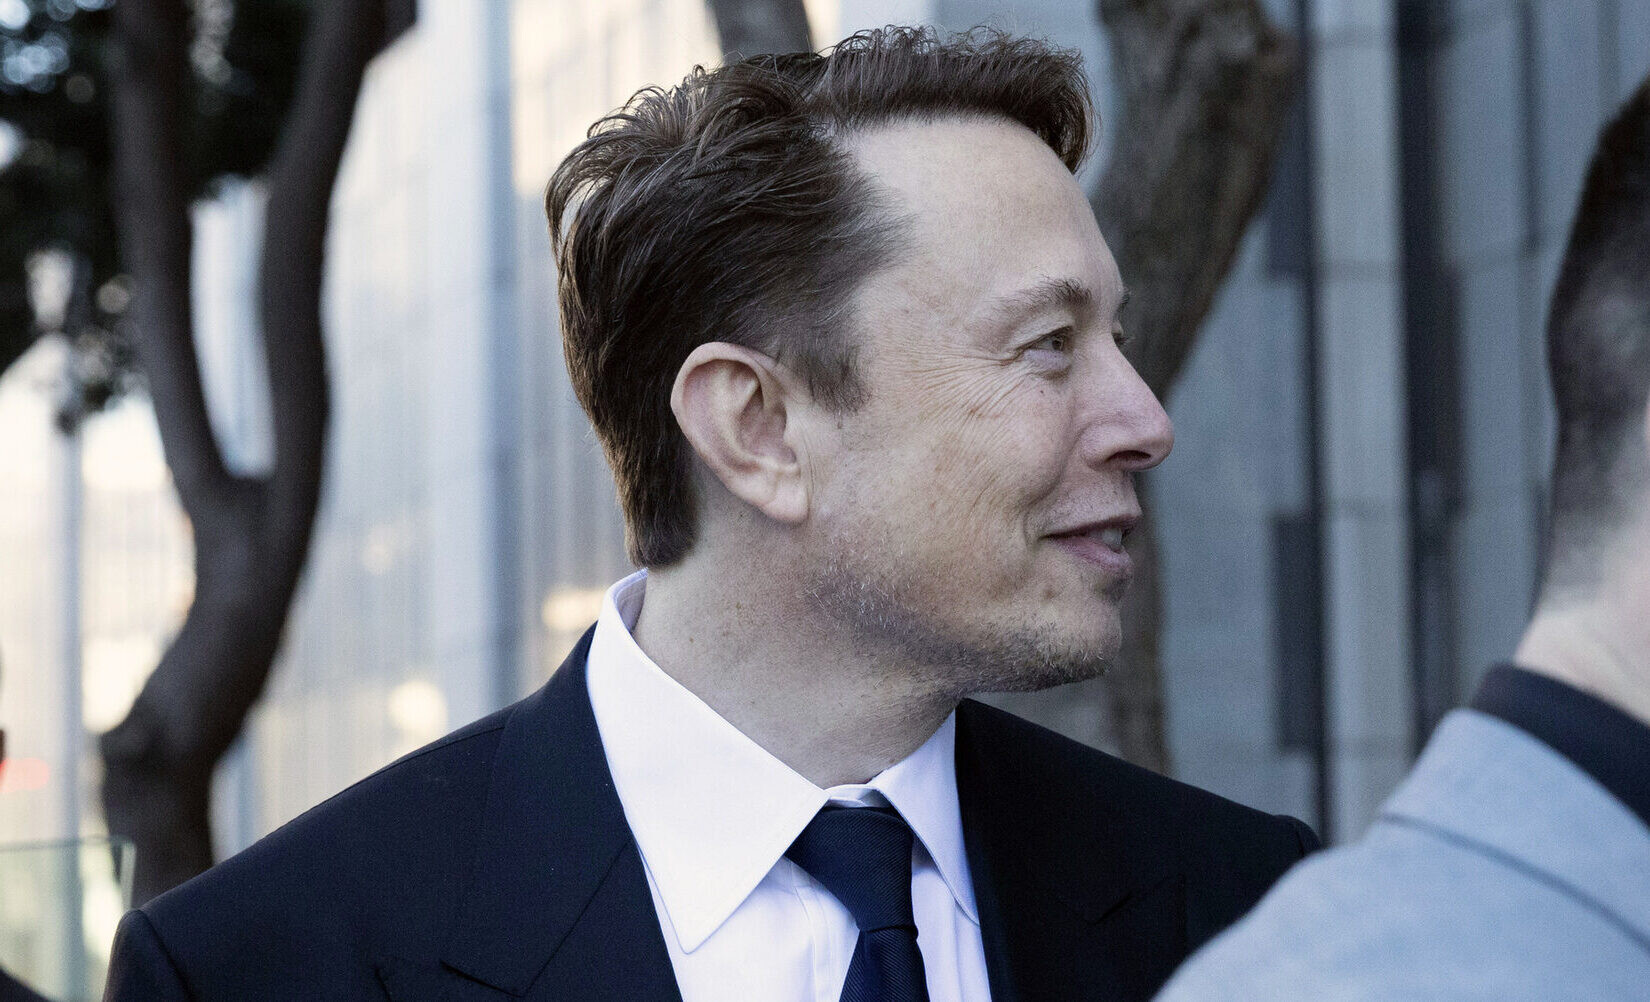 Cesta k miliardám. Ako sa stal Elon Musk jedným z najbohatších ľudí planéty